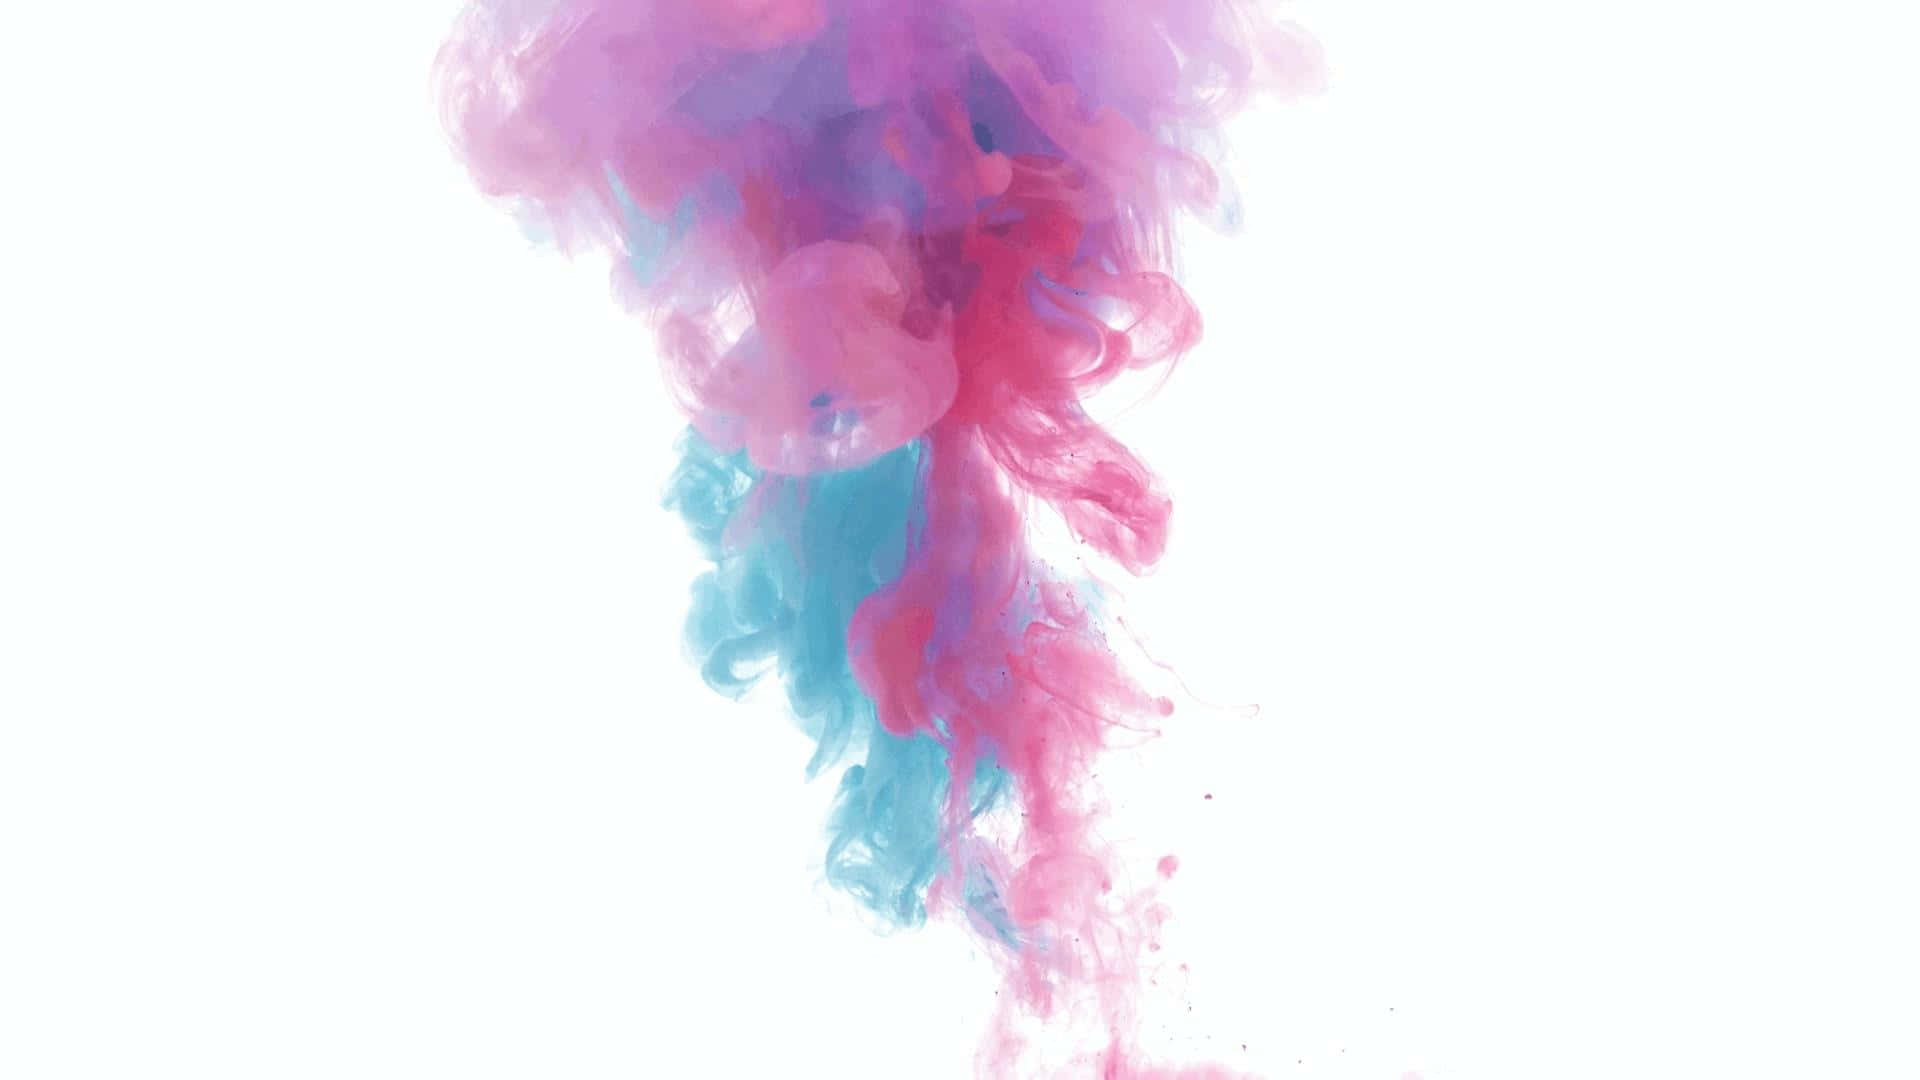 Unosfondo Di Fumo Colorato, Caratterizzato Da Vivaci Tonalità Di Blu E Rosa.